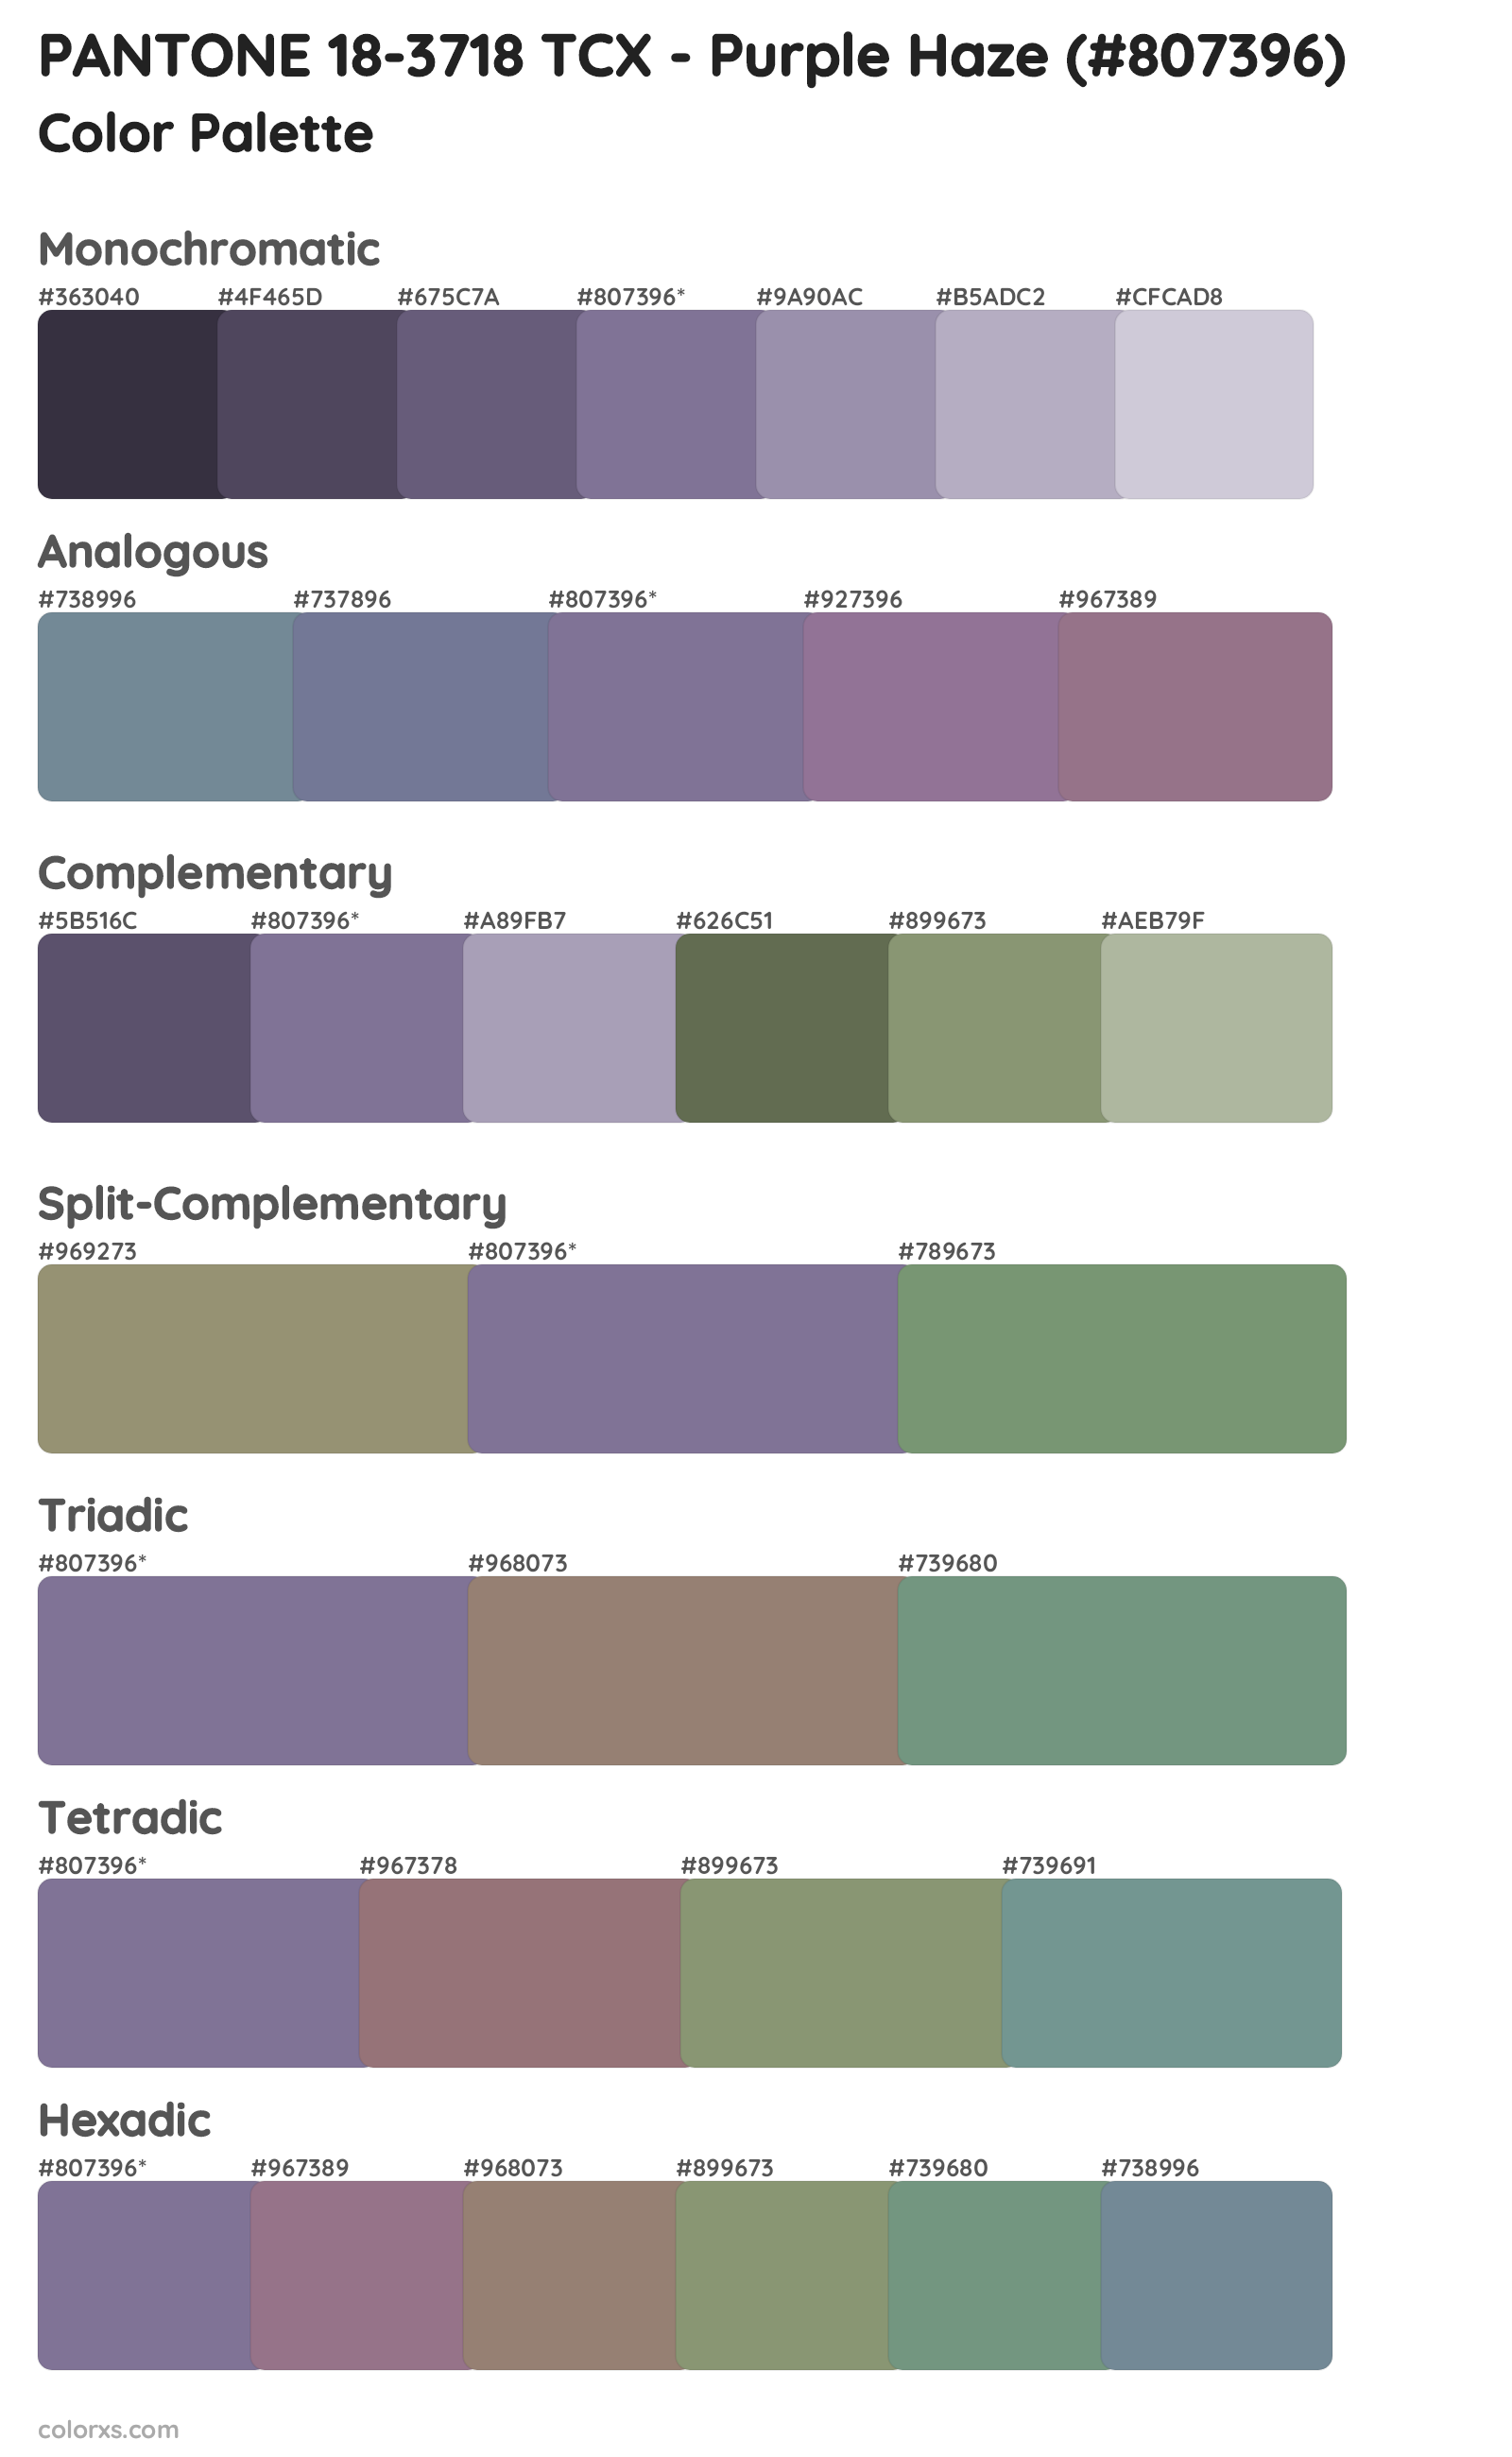 PANTONE 18-3718 TCX - Purple Haze Color Scheme Palettes